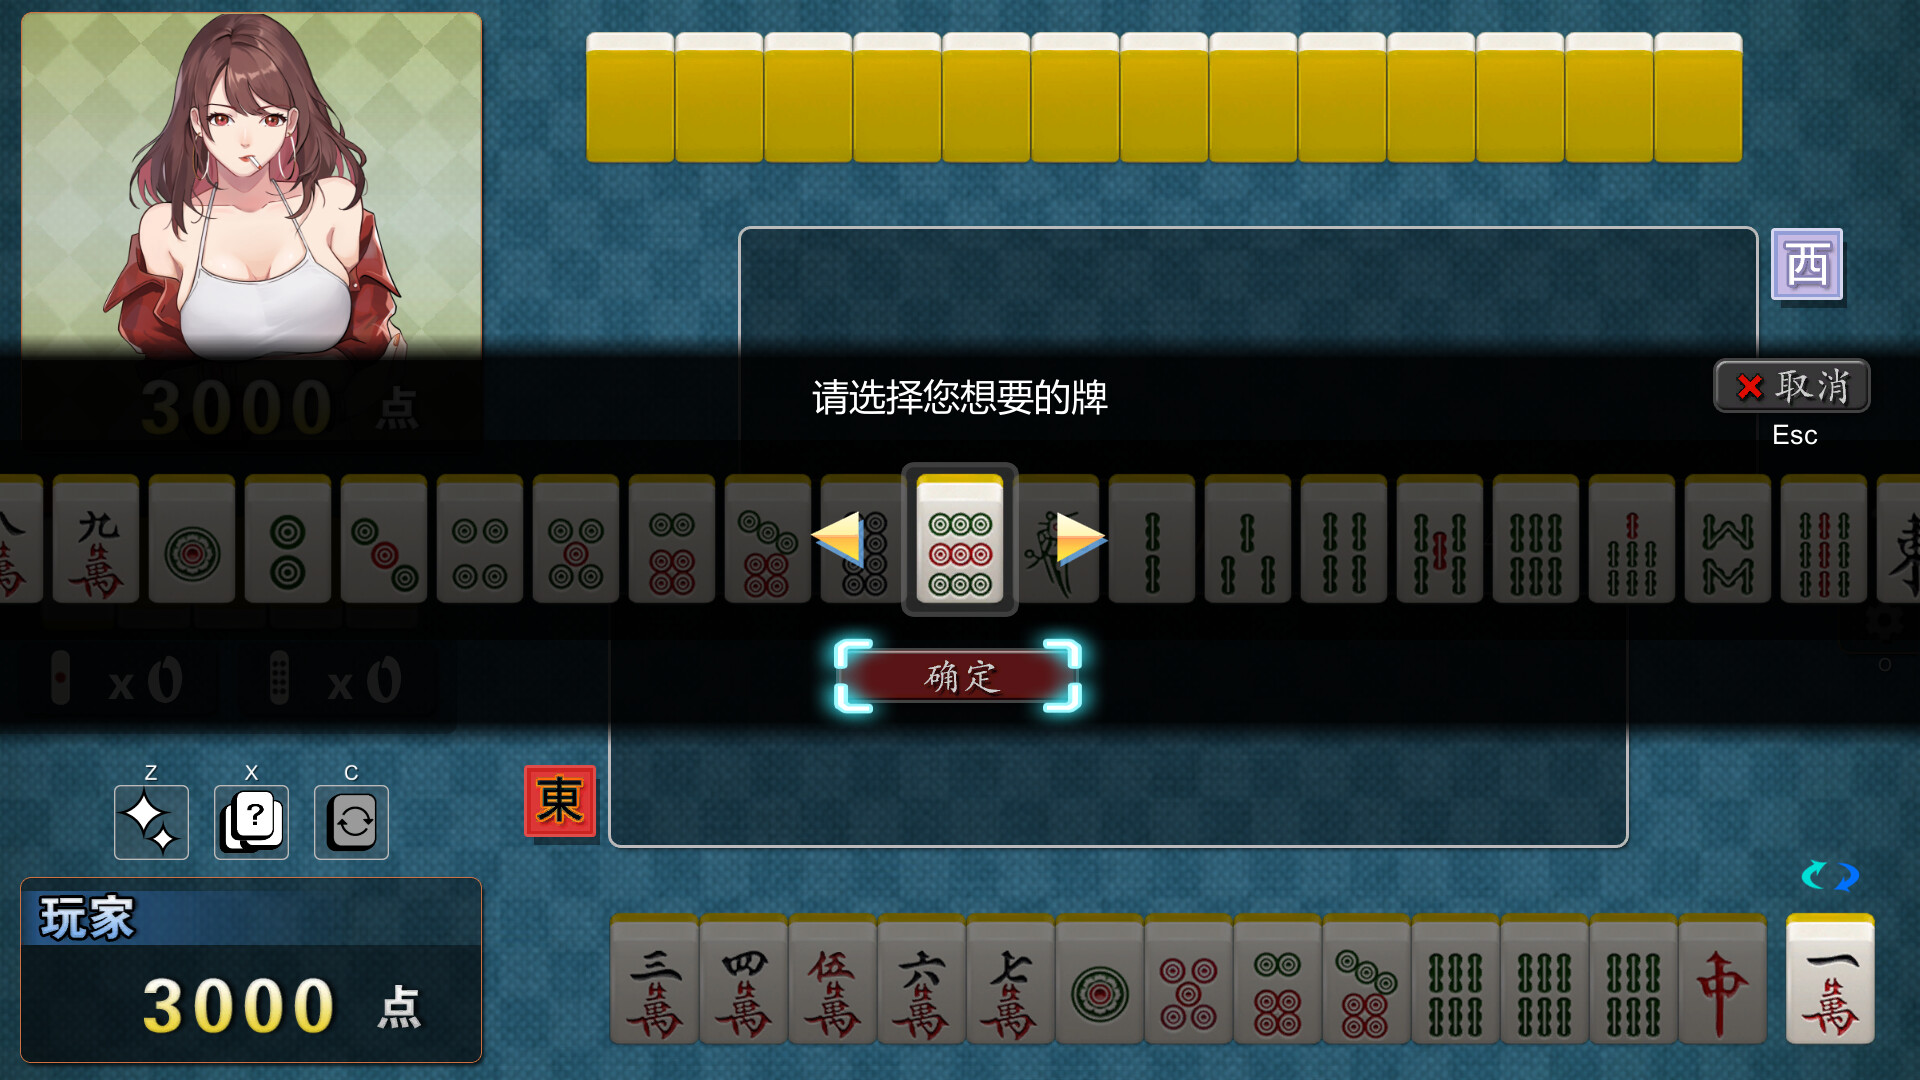 勾八麻将|官方中文|支持手柄|J8 Mahjong插图1